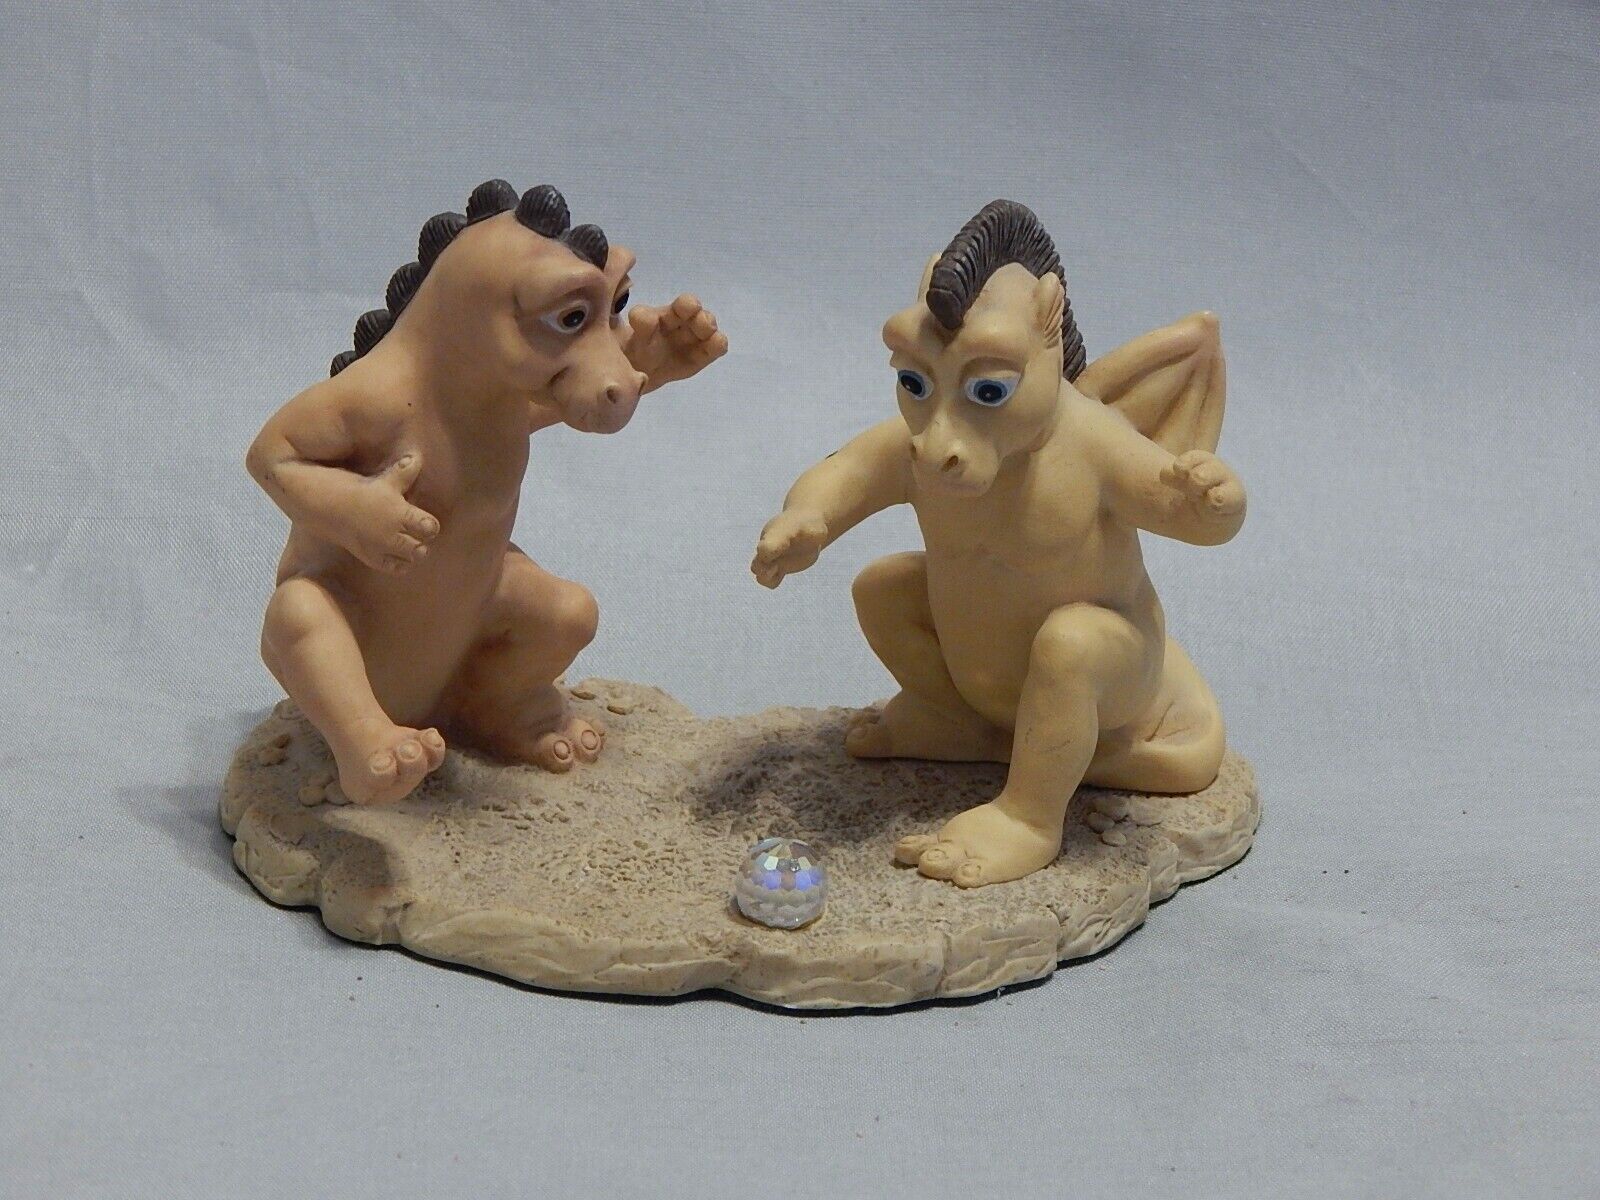 Panton England Dragon's Play Figurine